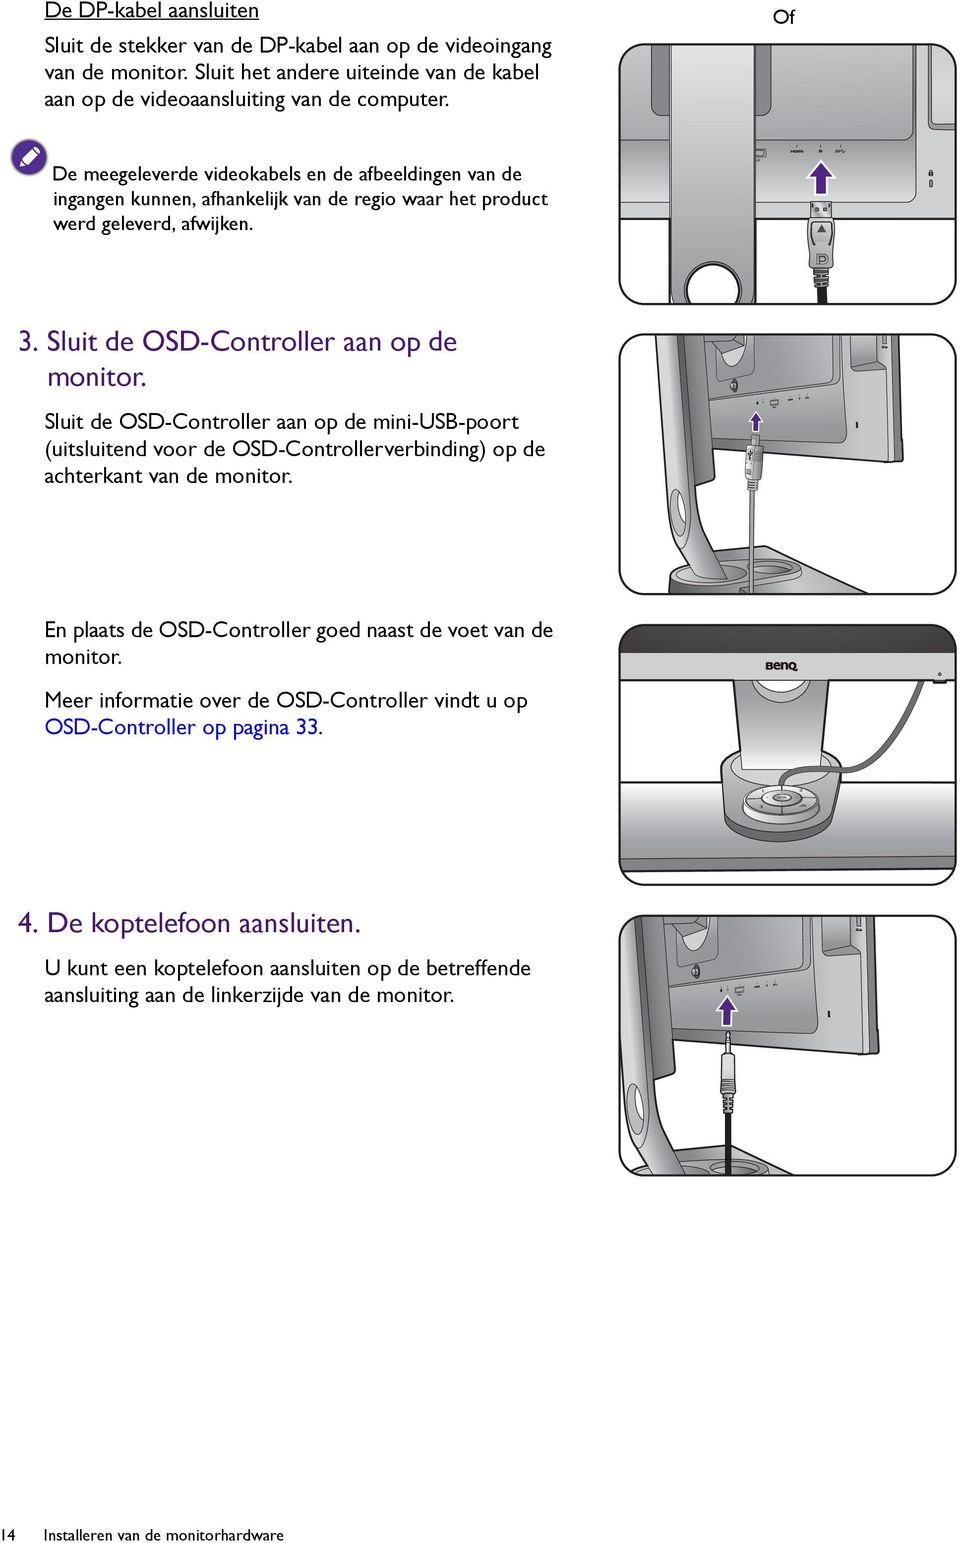 Sluit de OSD-Controller aan op de mini-usb-poort (uitsluitend voor de OSD-Controllerverbinding) op de achterkant van de monitor. En plaats de OSD-Controller goed naast de voet van de monitor.